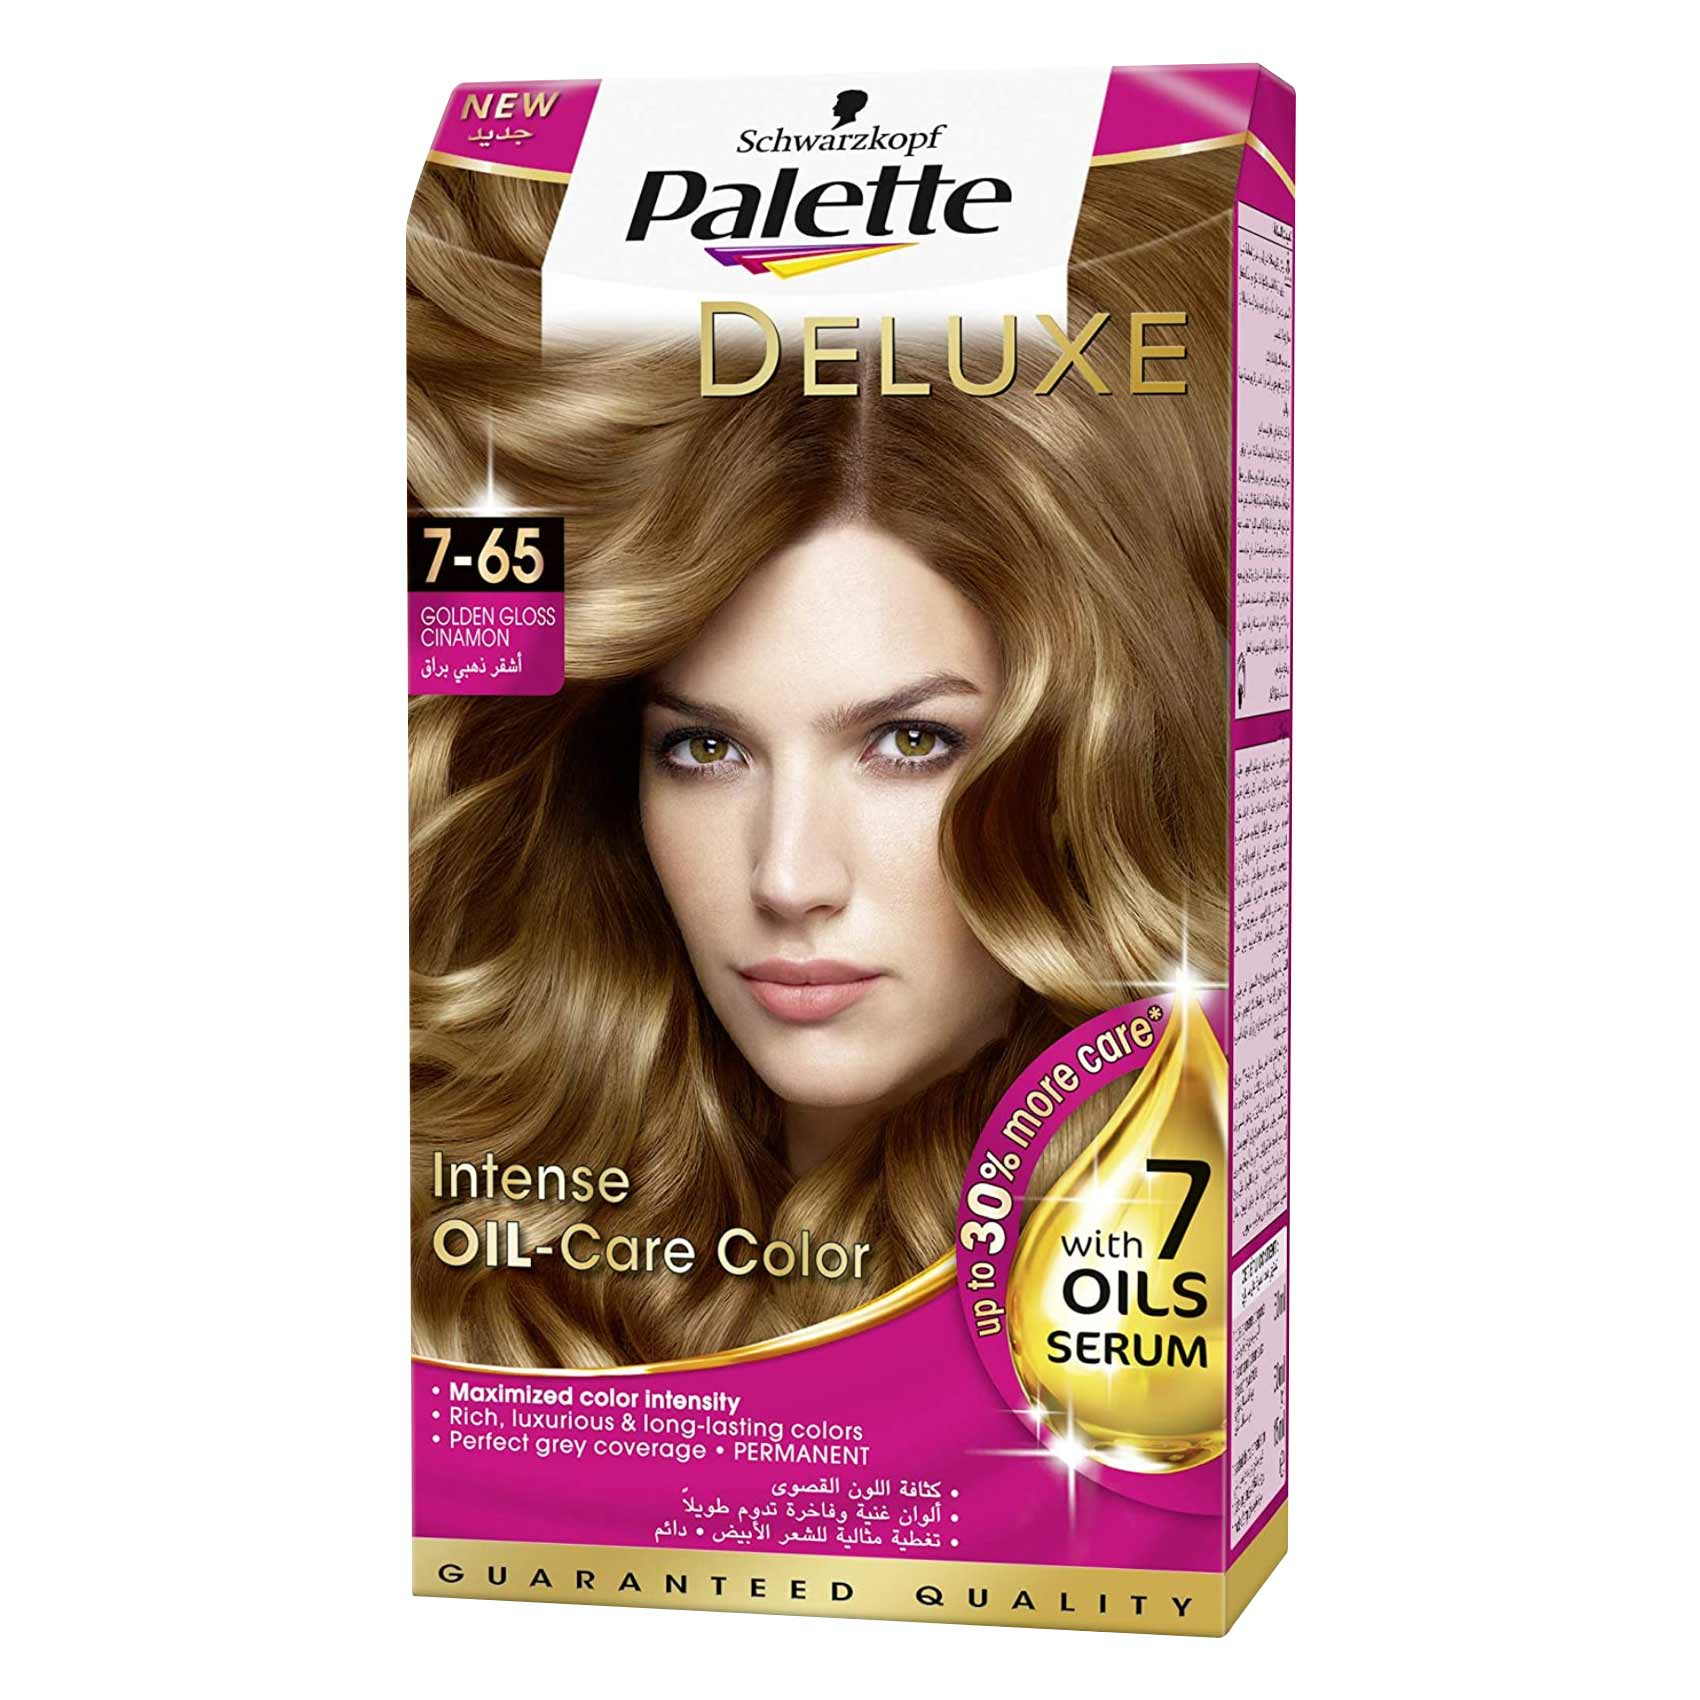 Schwarzkopf Palette Deluxe Intense Oil Care Hair Color 7-65 Golden Gloss Cinnamon 50ml